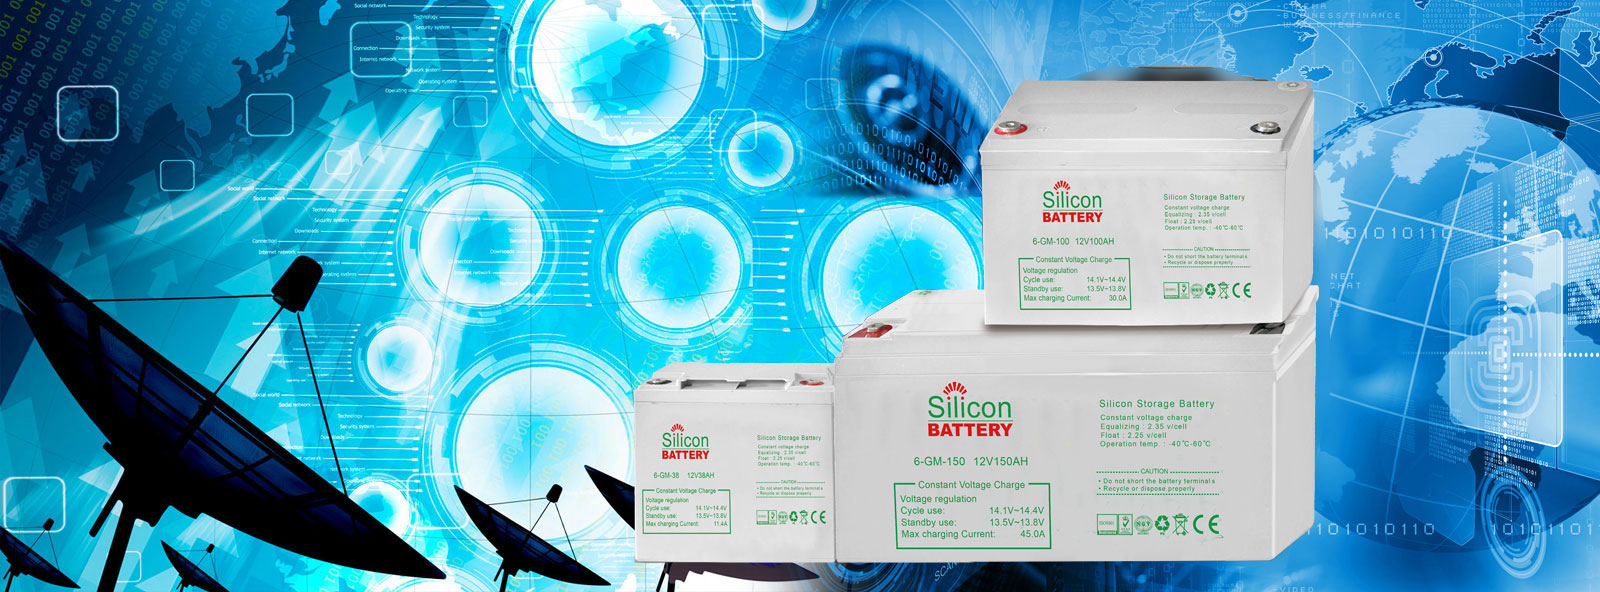 12V Storage Silicon Battery